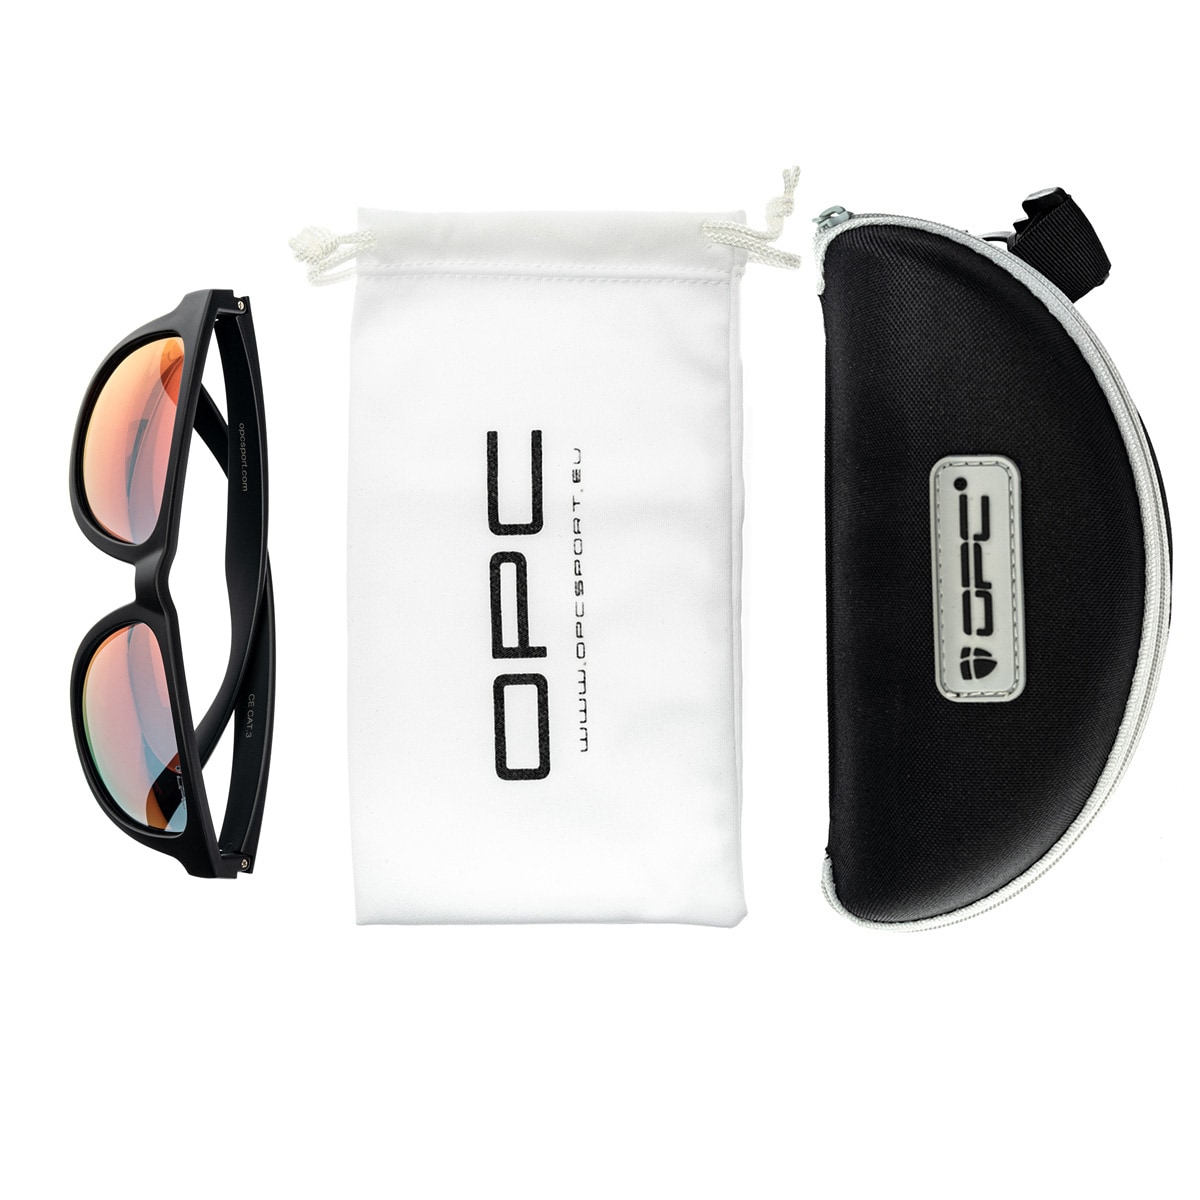 Okulary przeciwsłoneczne OPC Lifestyle Ibiza Blk Mat Red Revo z polaryzacją 